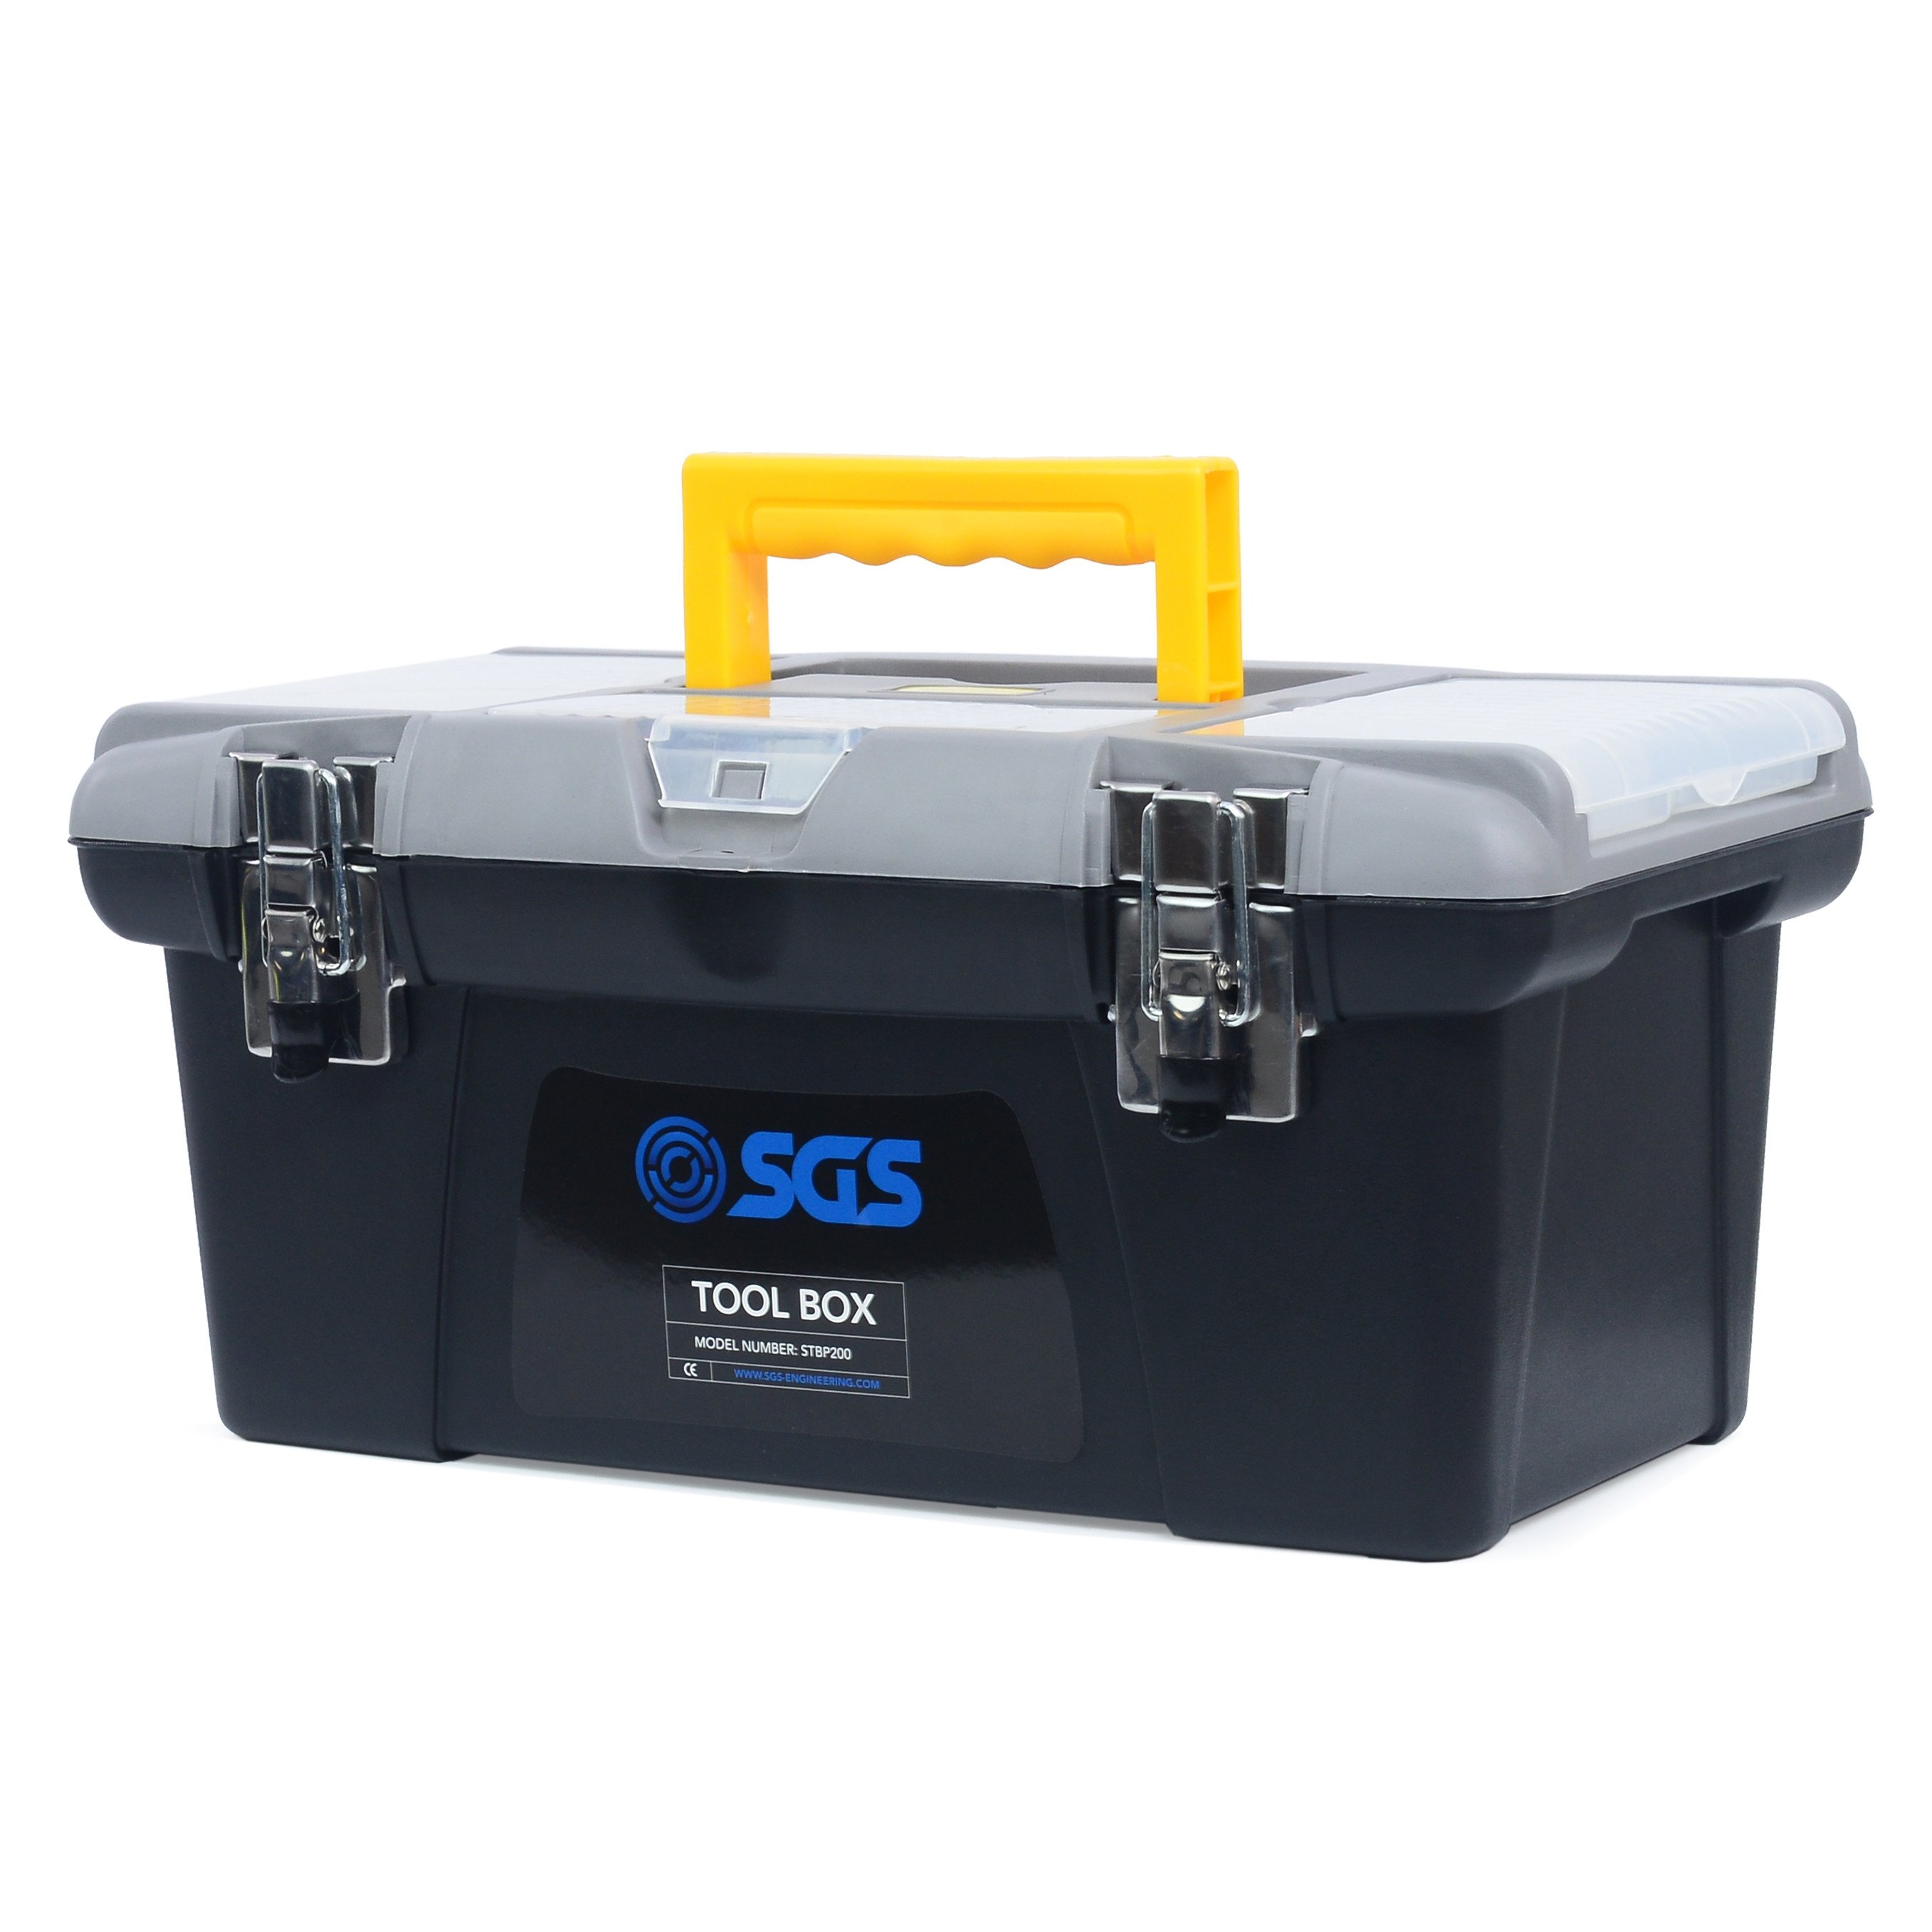 SGS工具箱与存储盘